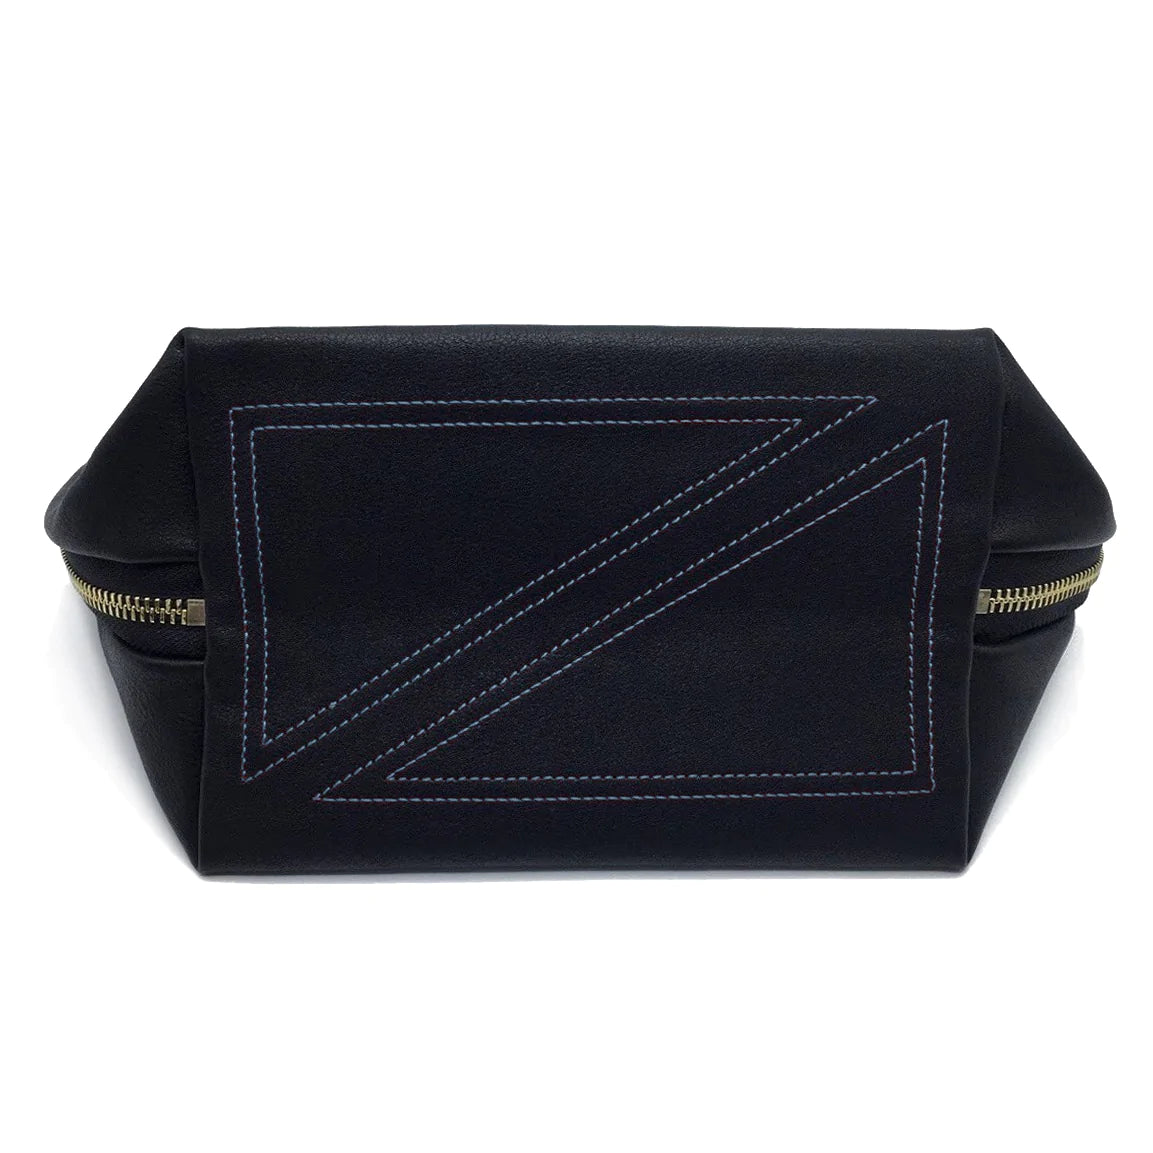 KUSSHI Signature Makeup Bag Satin Black Fabric with Cool Grey Interior